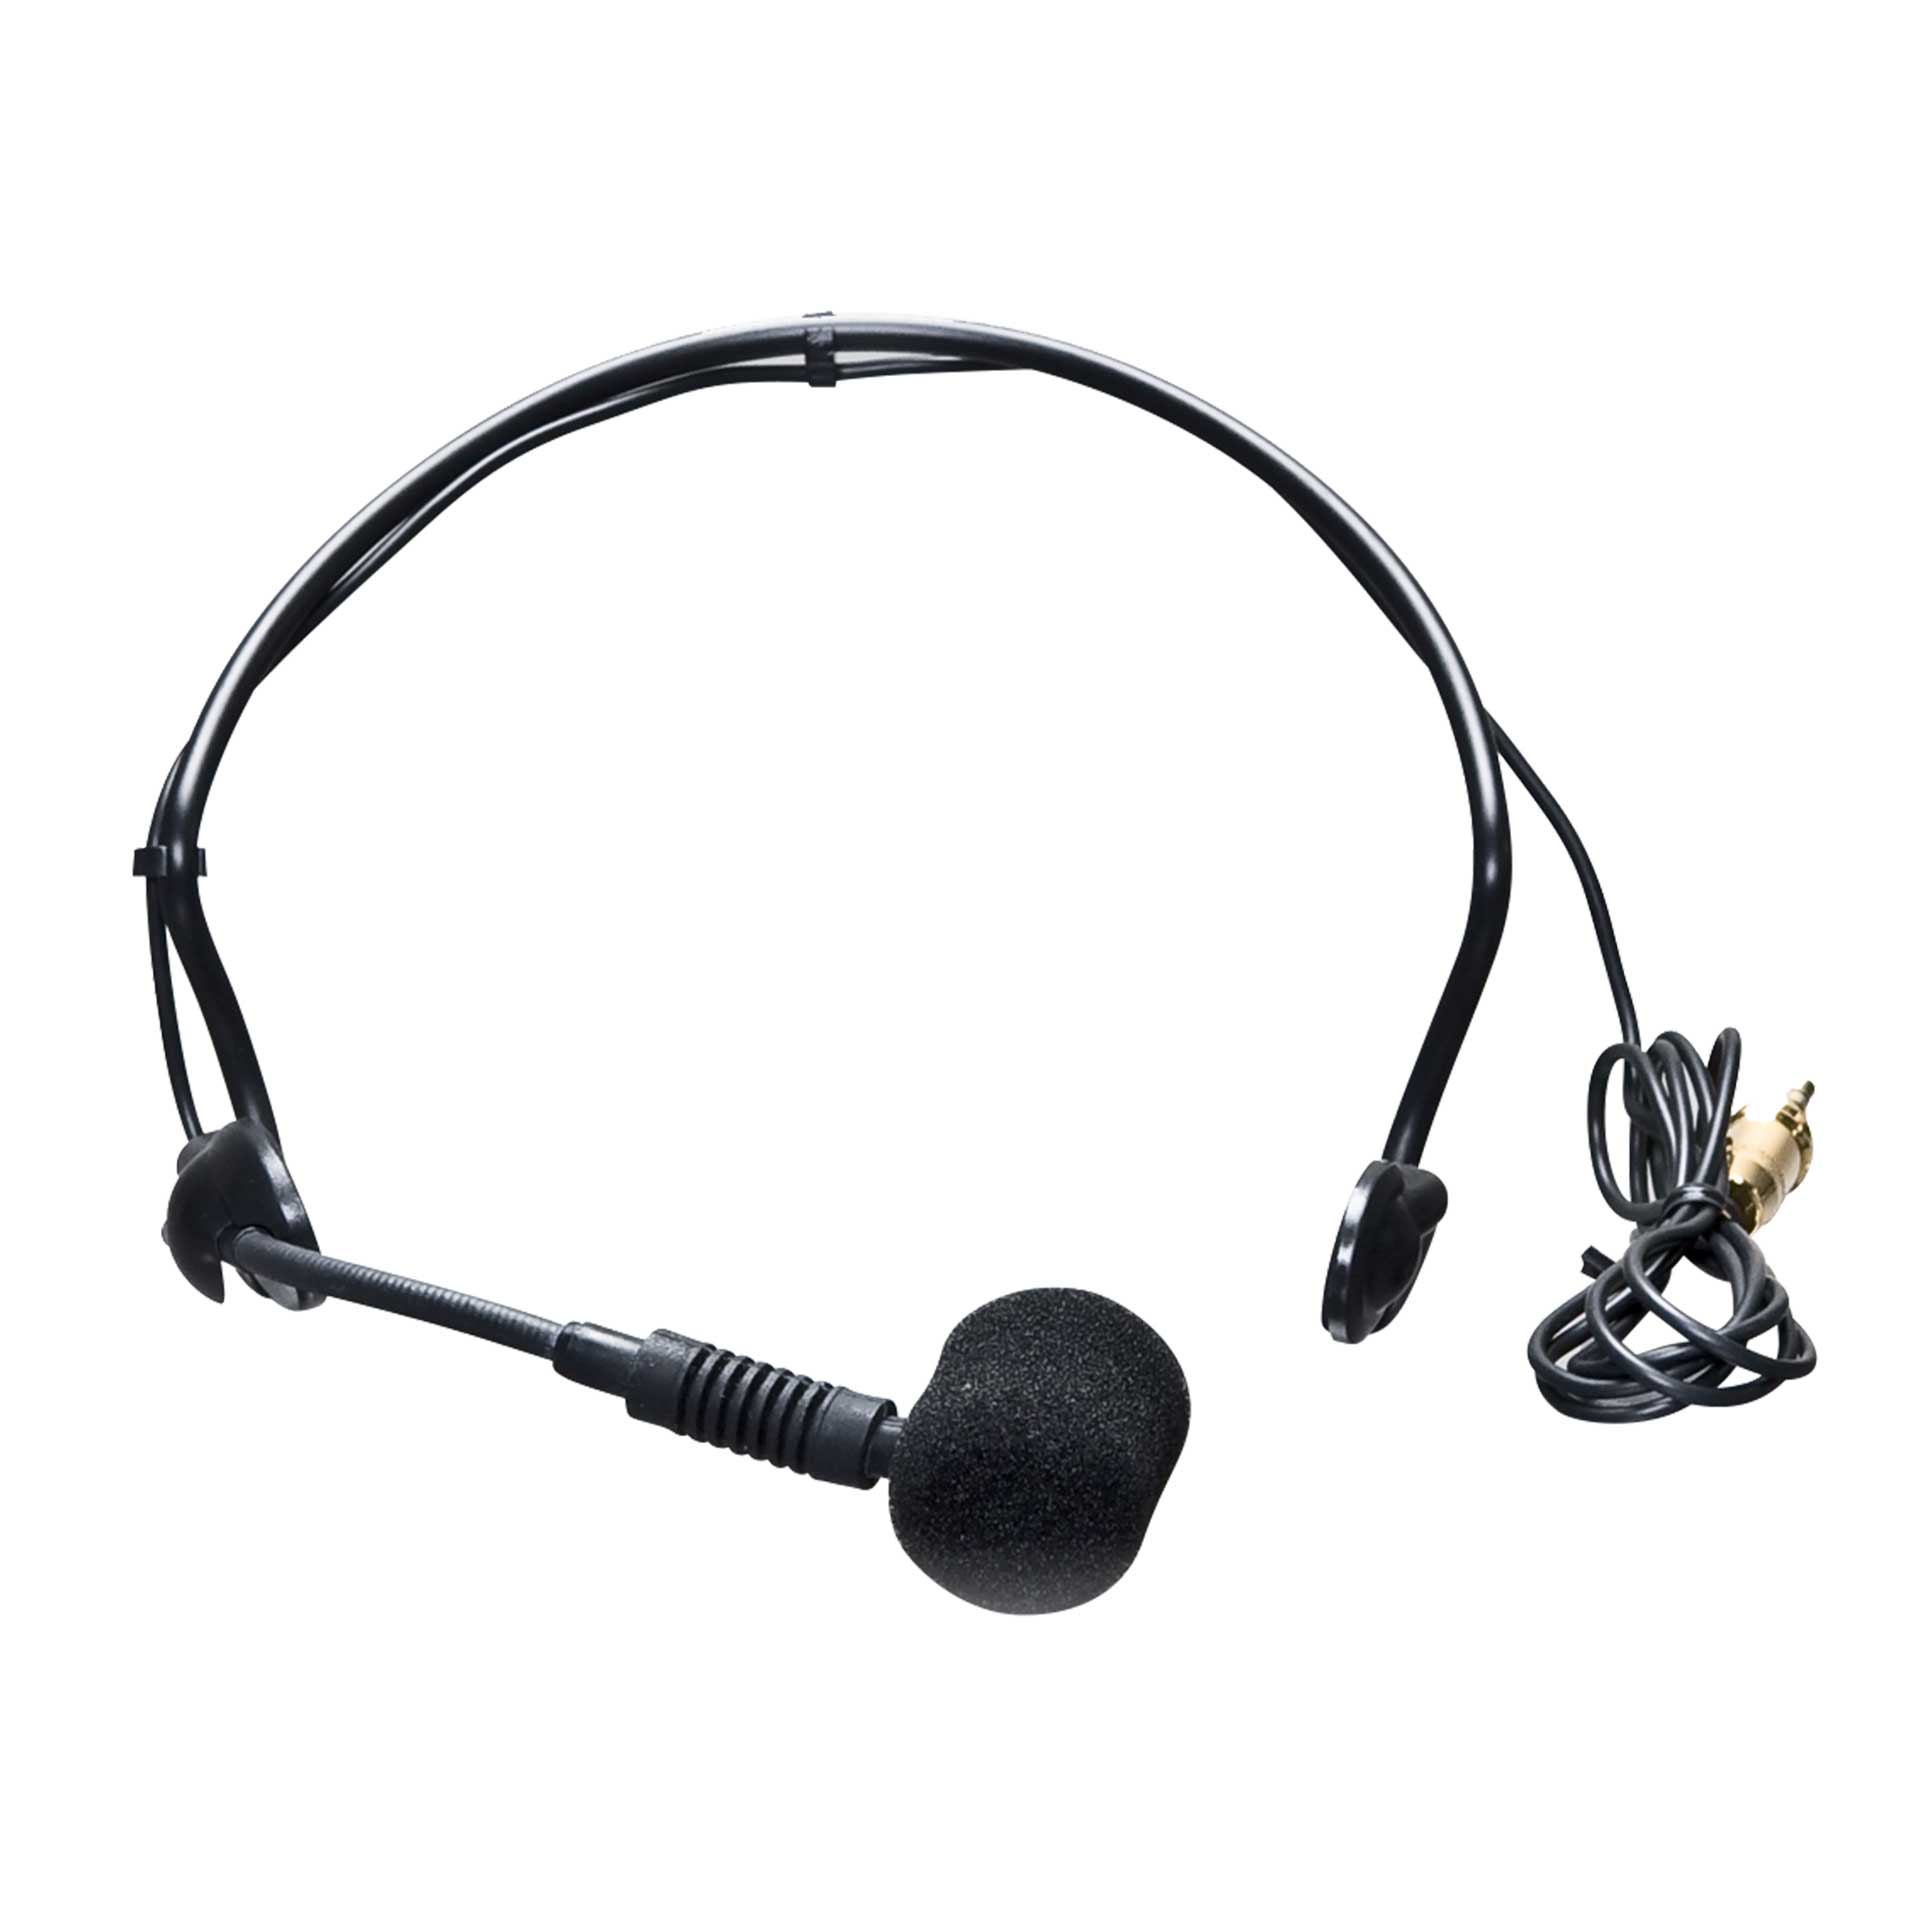 Головные микрофоны RCF HE 2006 (14115023) головные микрофоны micw h825 kit